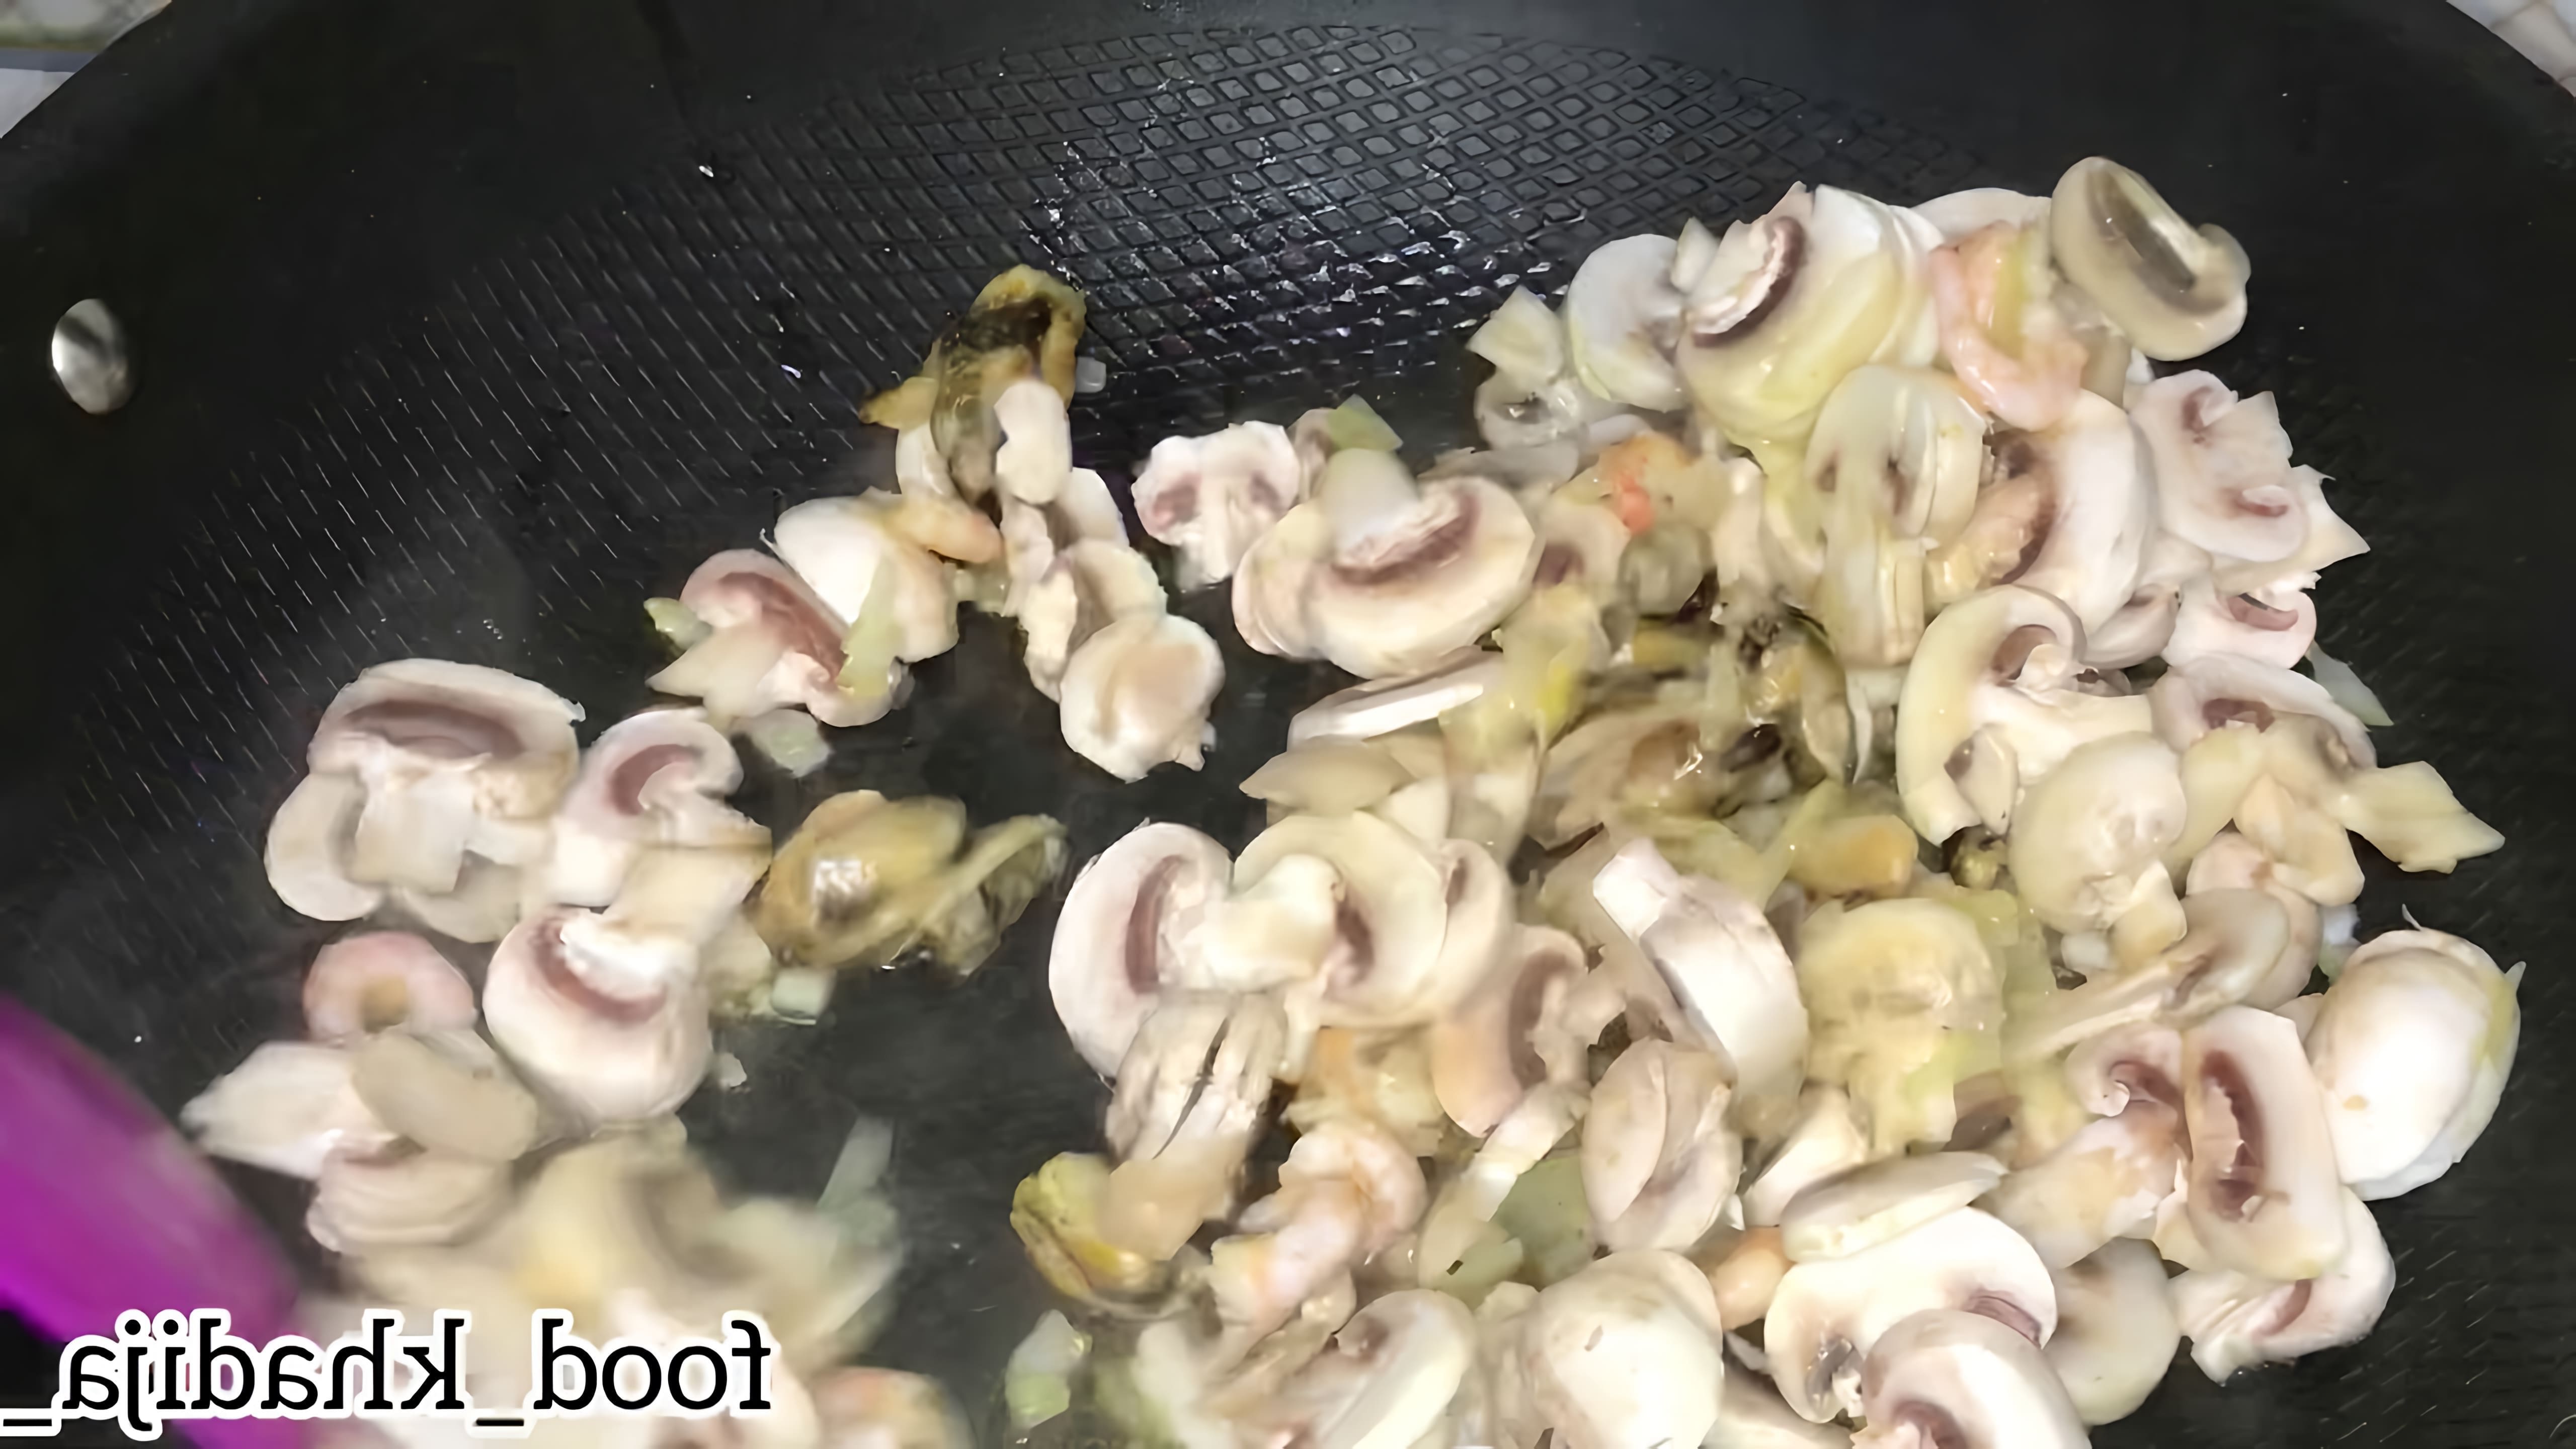 В этом видео-ролике мы увидим процесс приготовления вкусного итальянского блюда - фетучини с морепродуктами в сливочном соусе